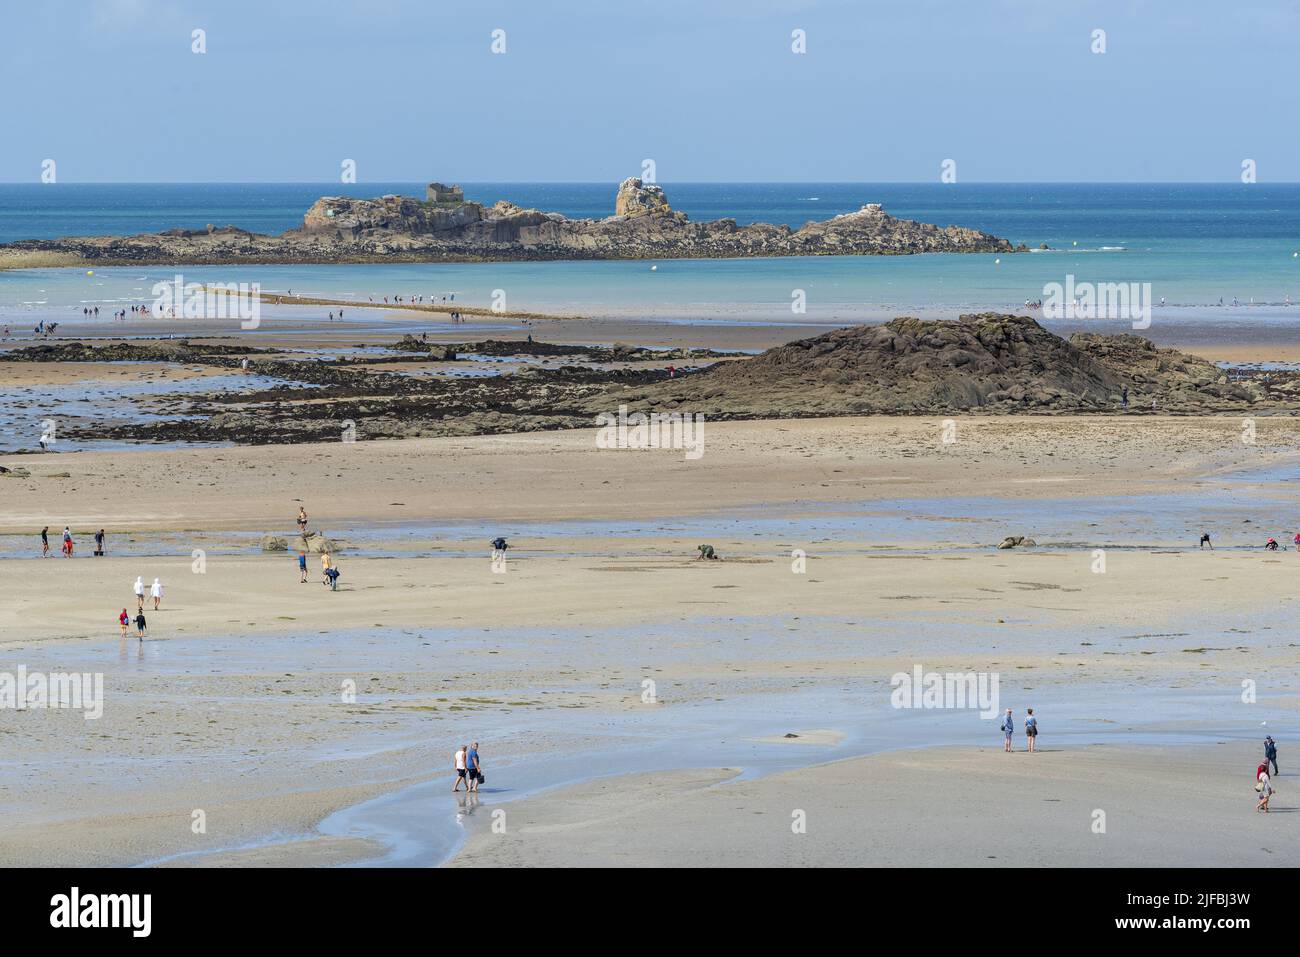 France, Cotes d'Armor, Saint Jacut de la Mer, Pointe du Chevet, beach, fishing, low tide Stock Photo